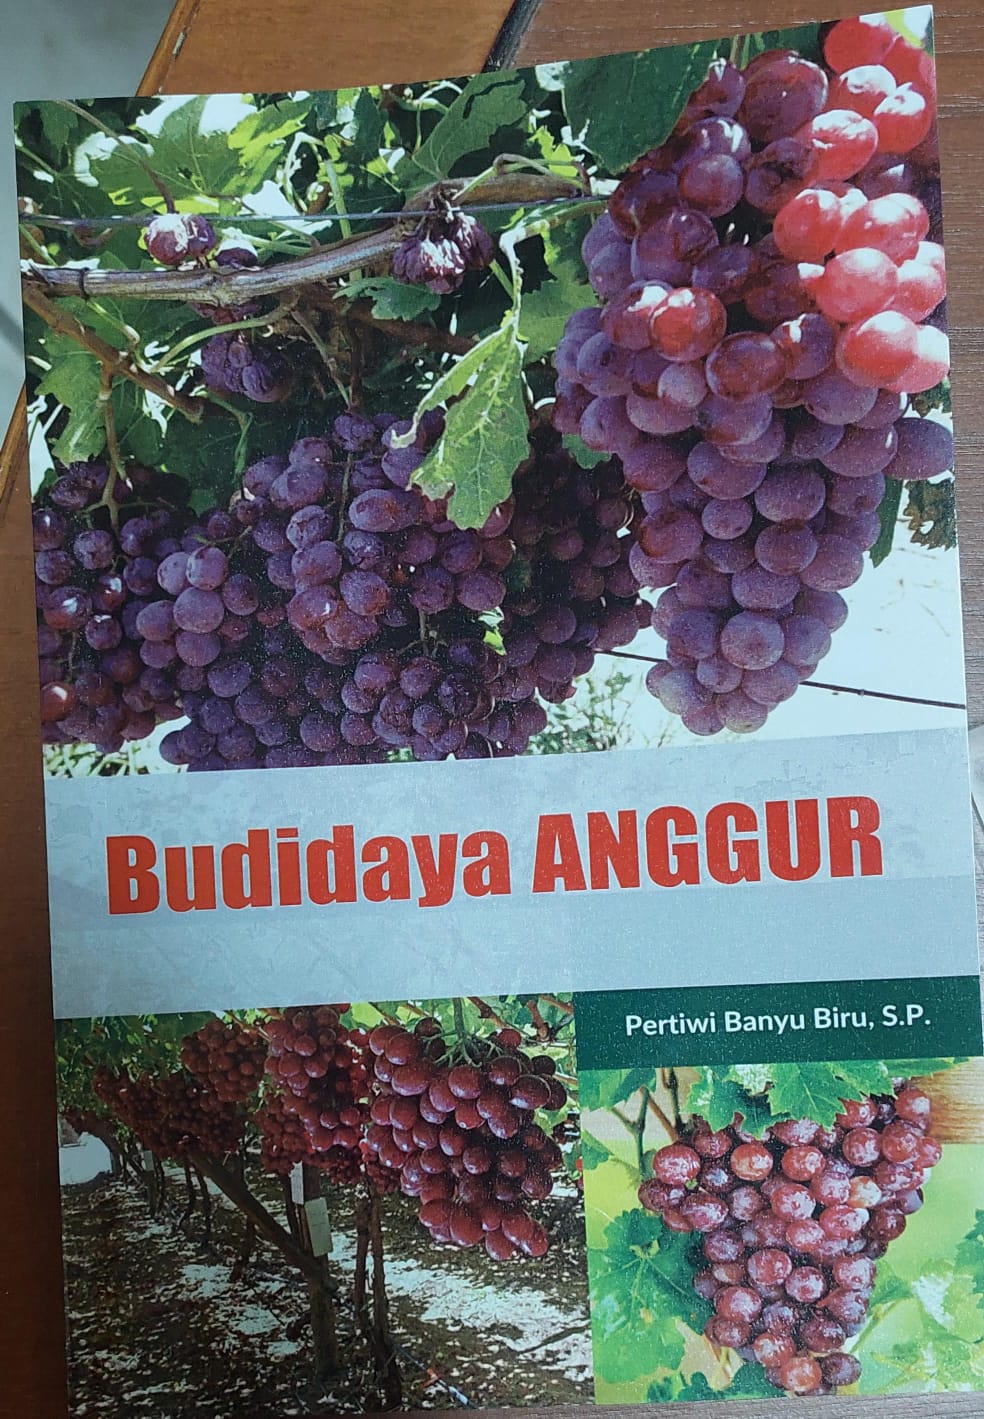 Budidaya anggur